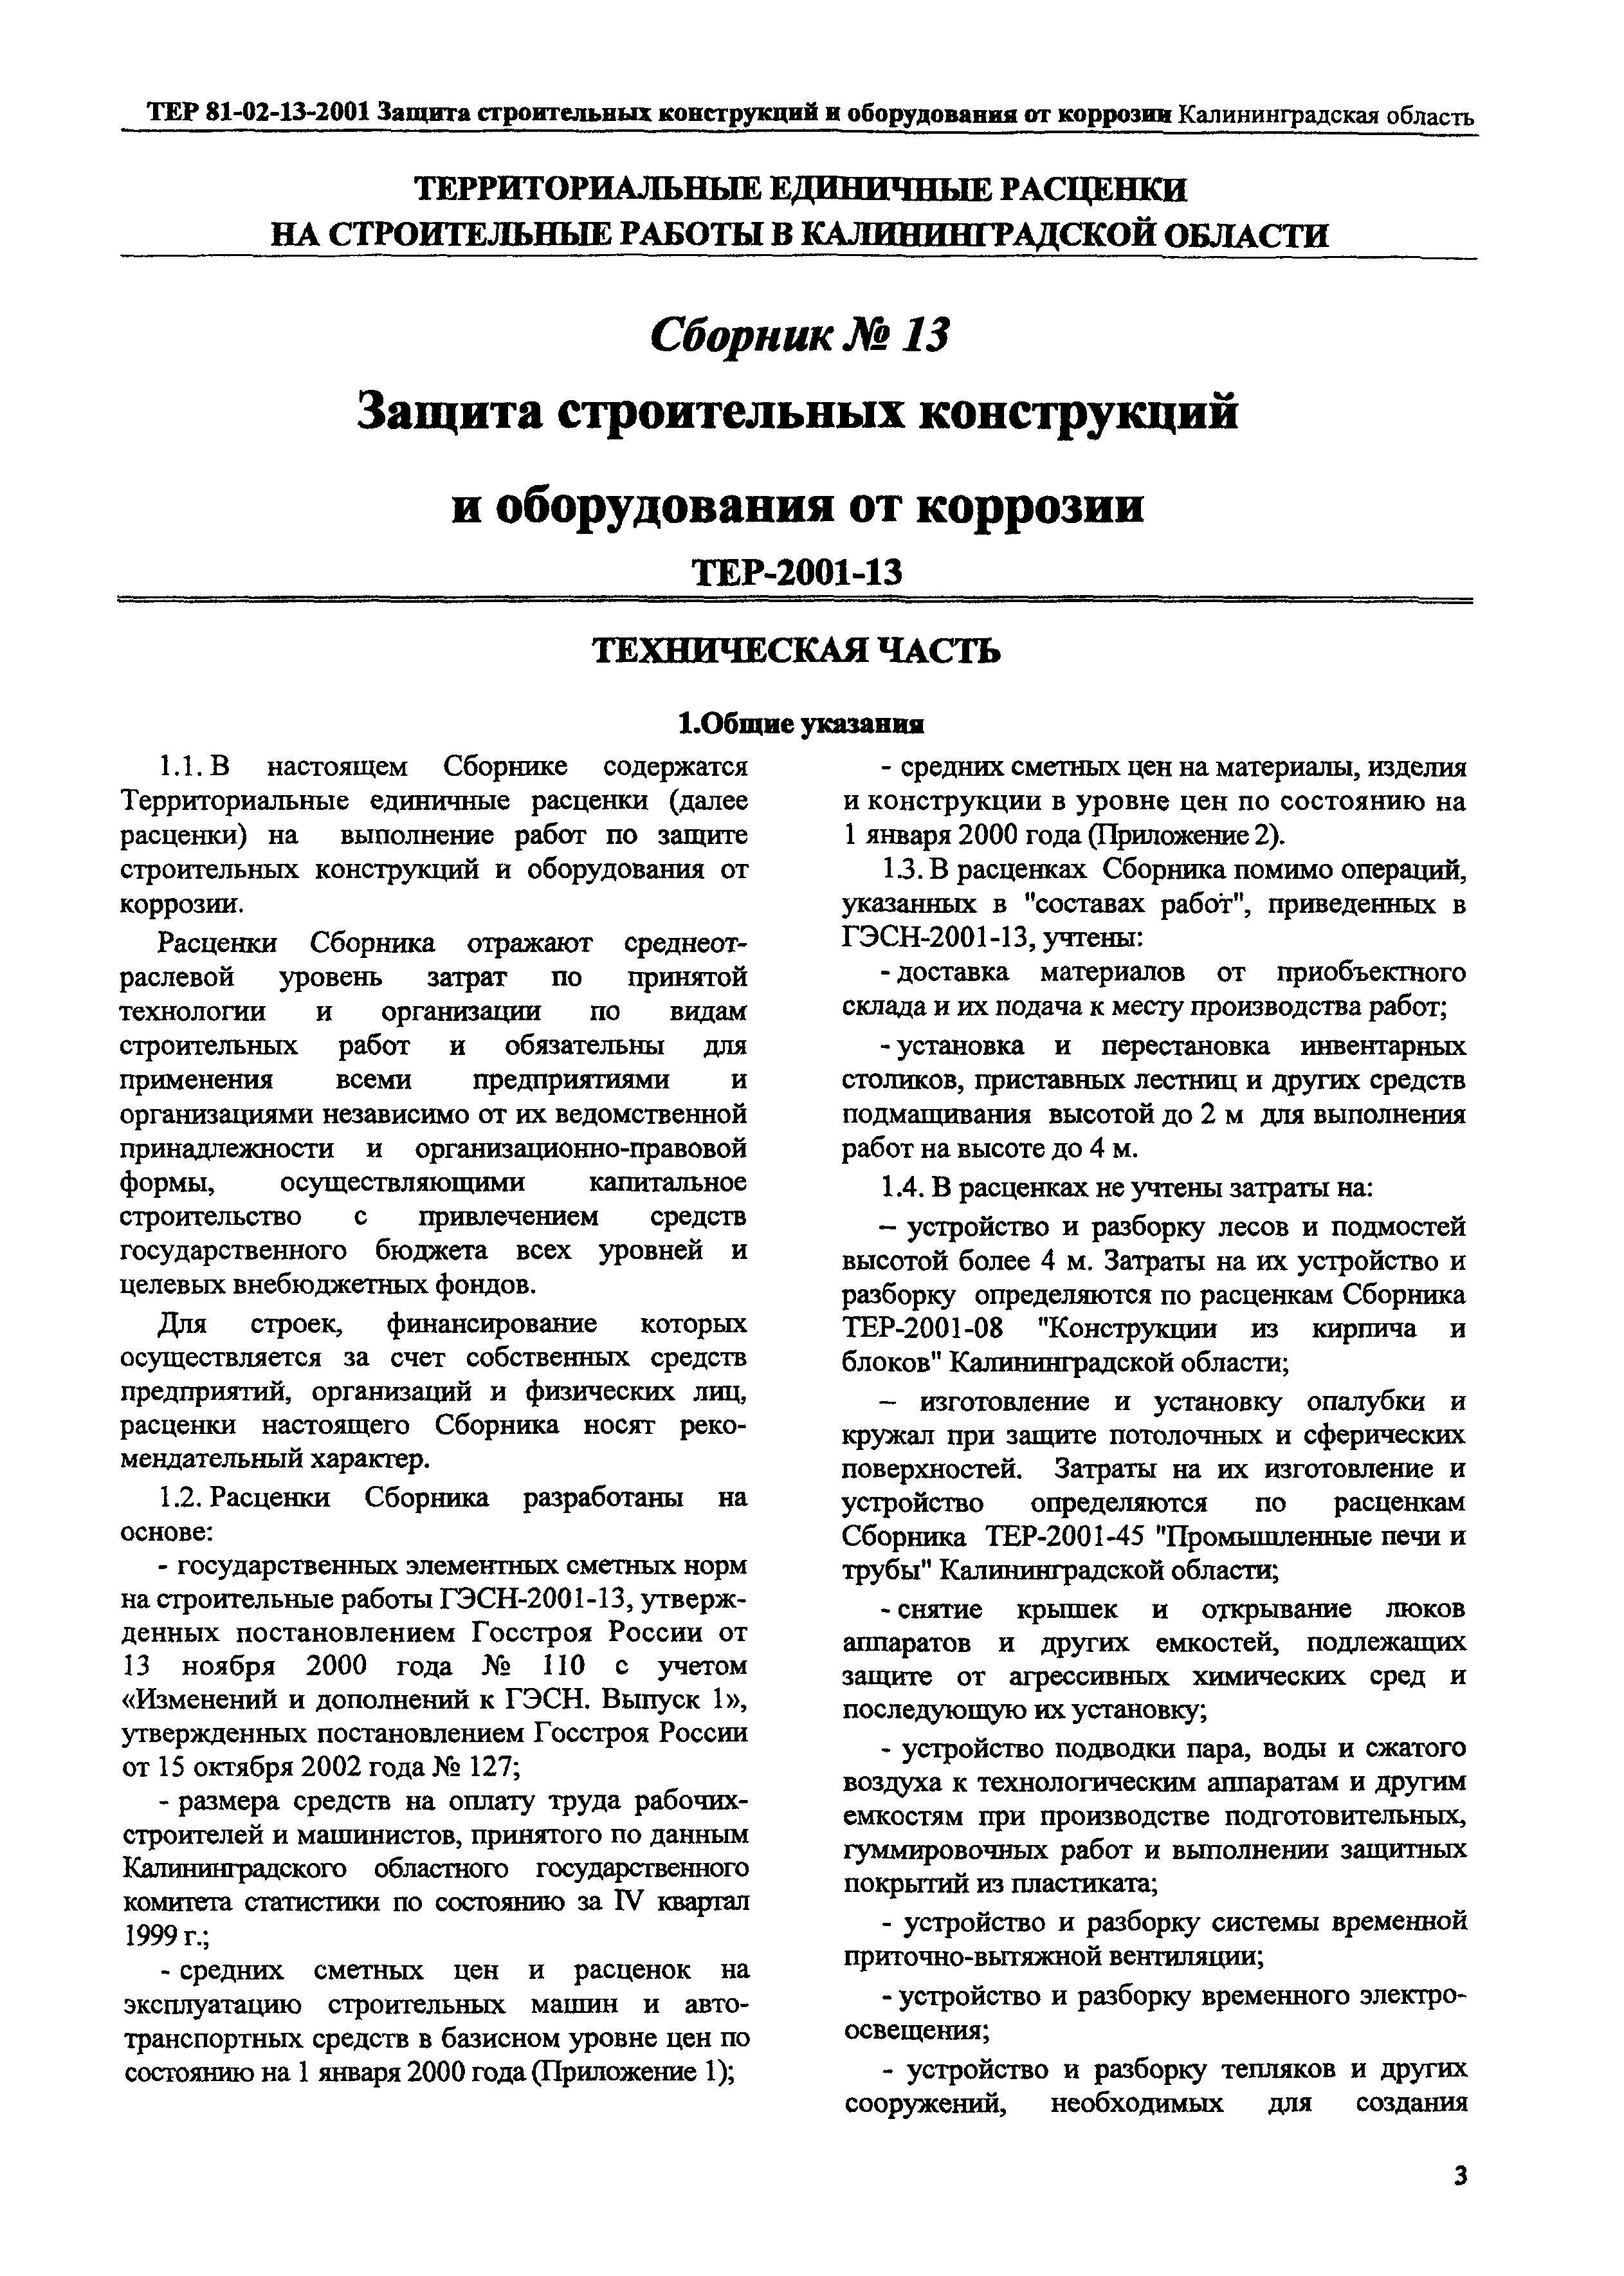 ТЕР Калининградской области 2001-13